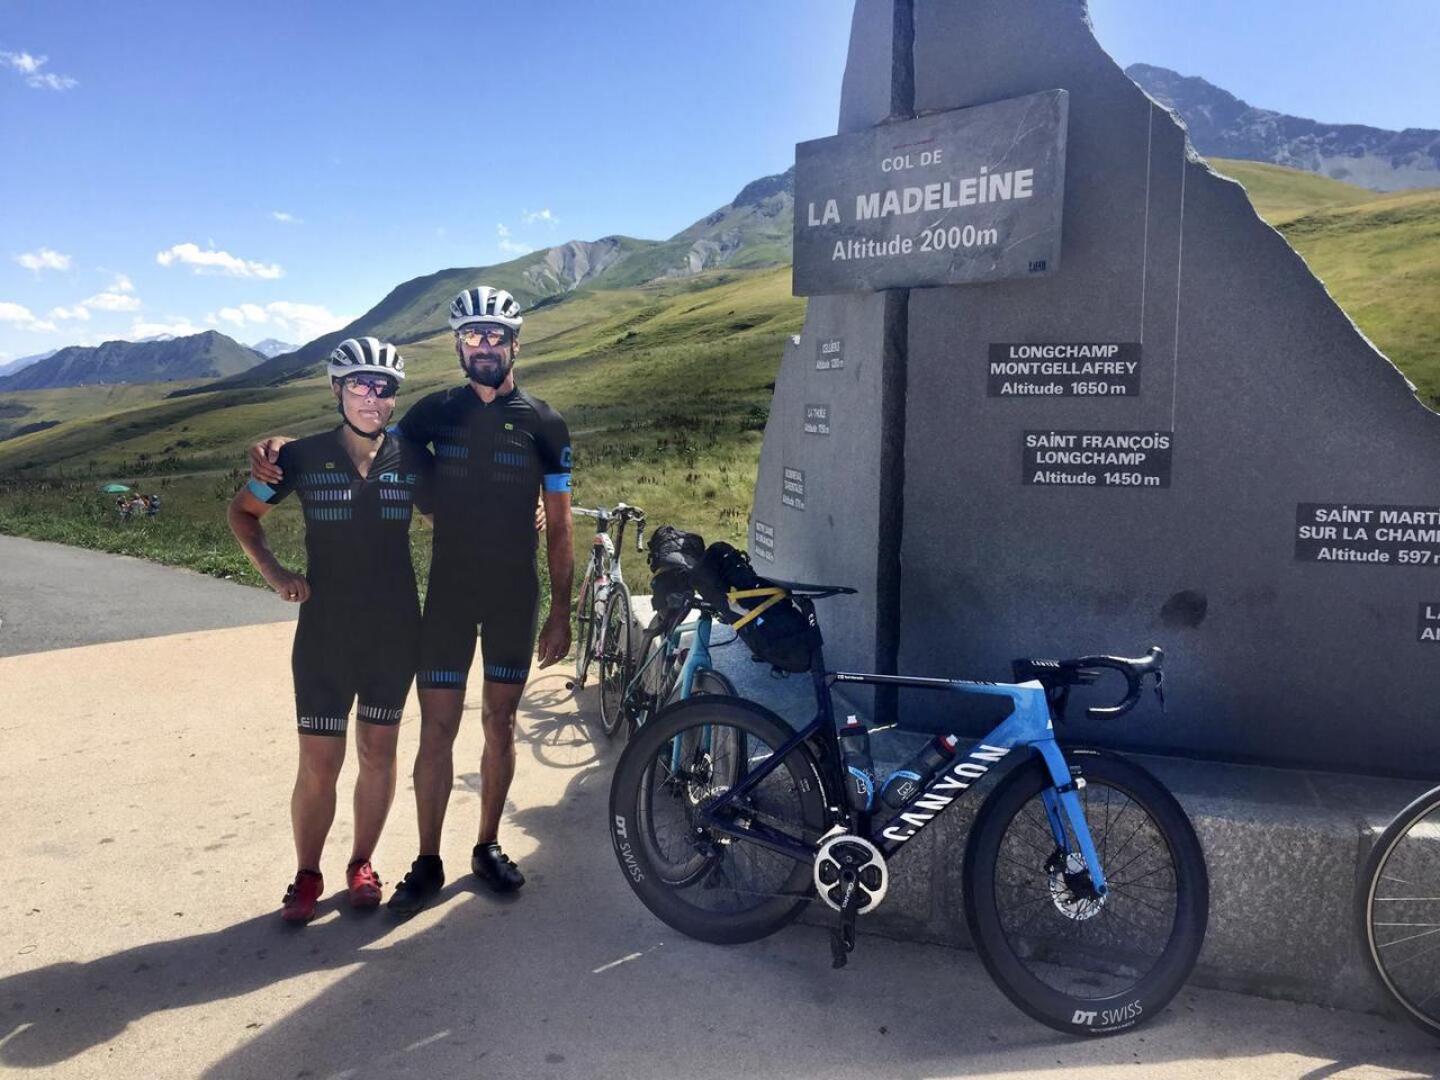 Muun muassa kaksi kilometriä korkean Col de la Madeleinen huipulla on maamerkki, jonka luona pyöräilijät ottavat kuvia.